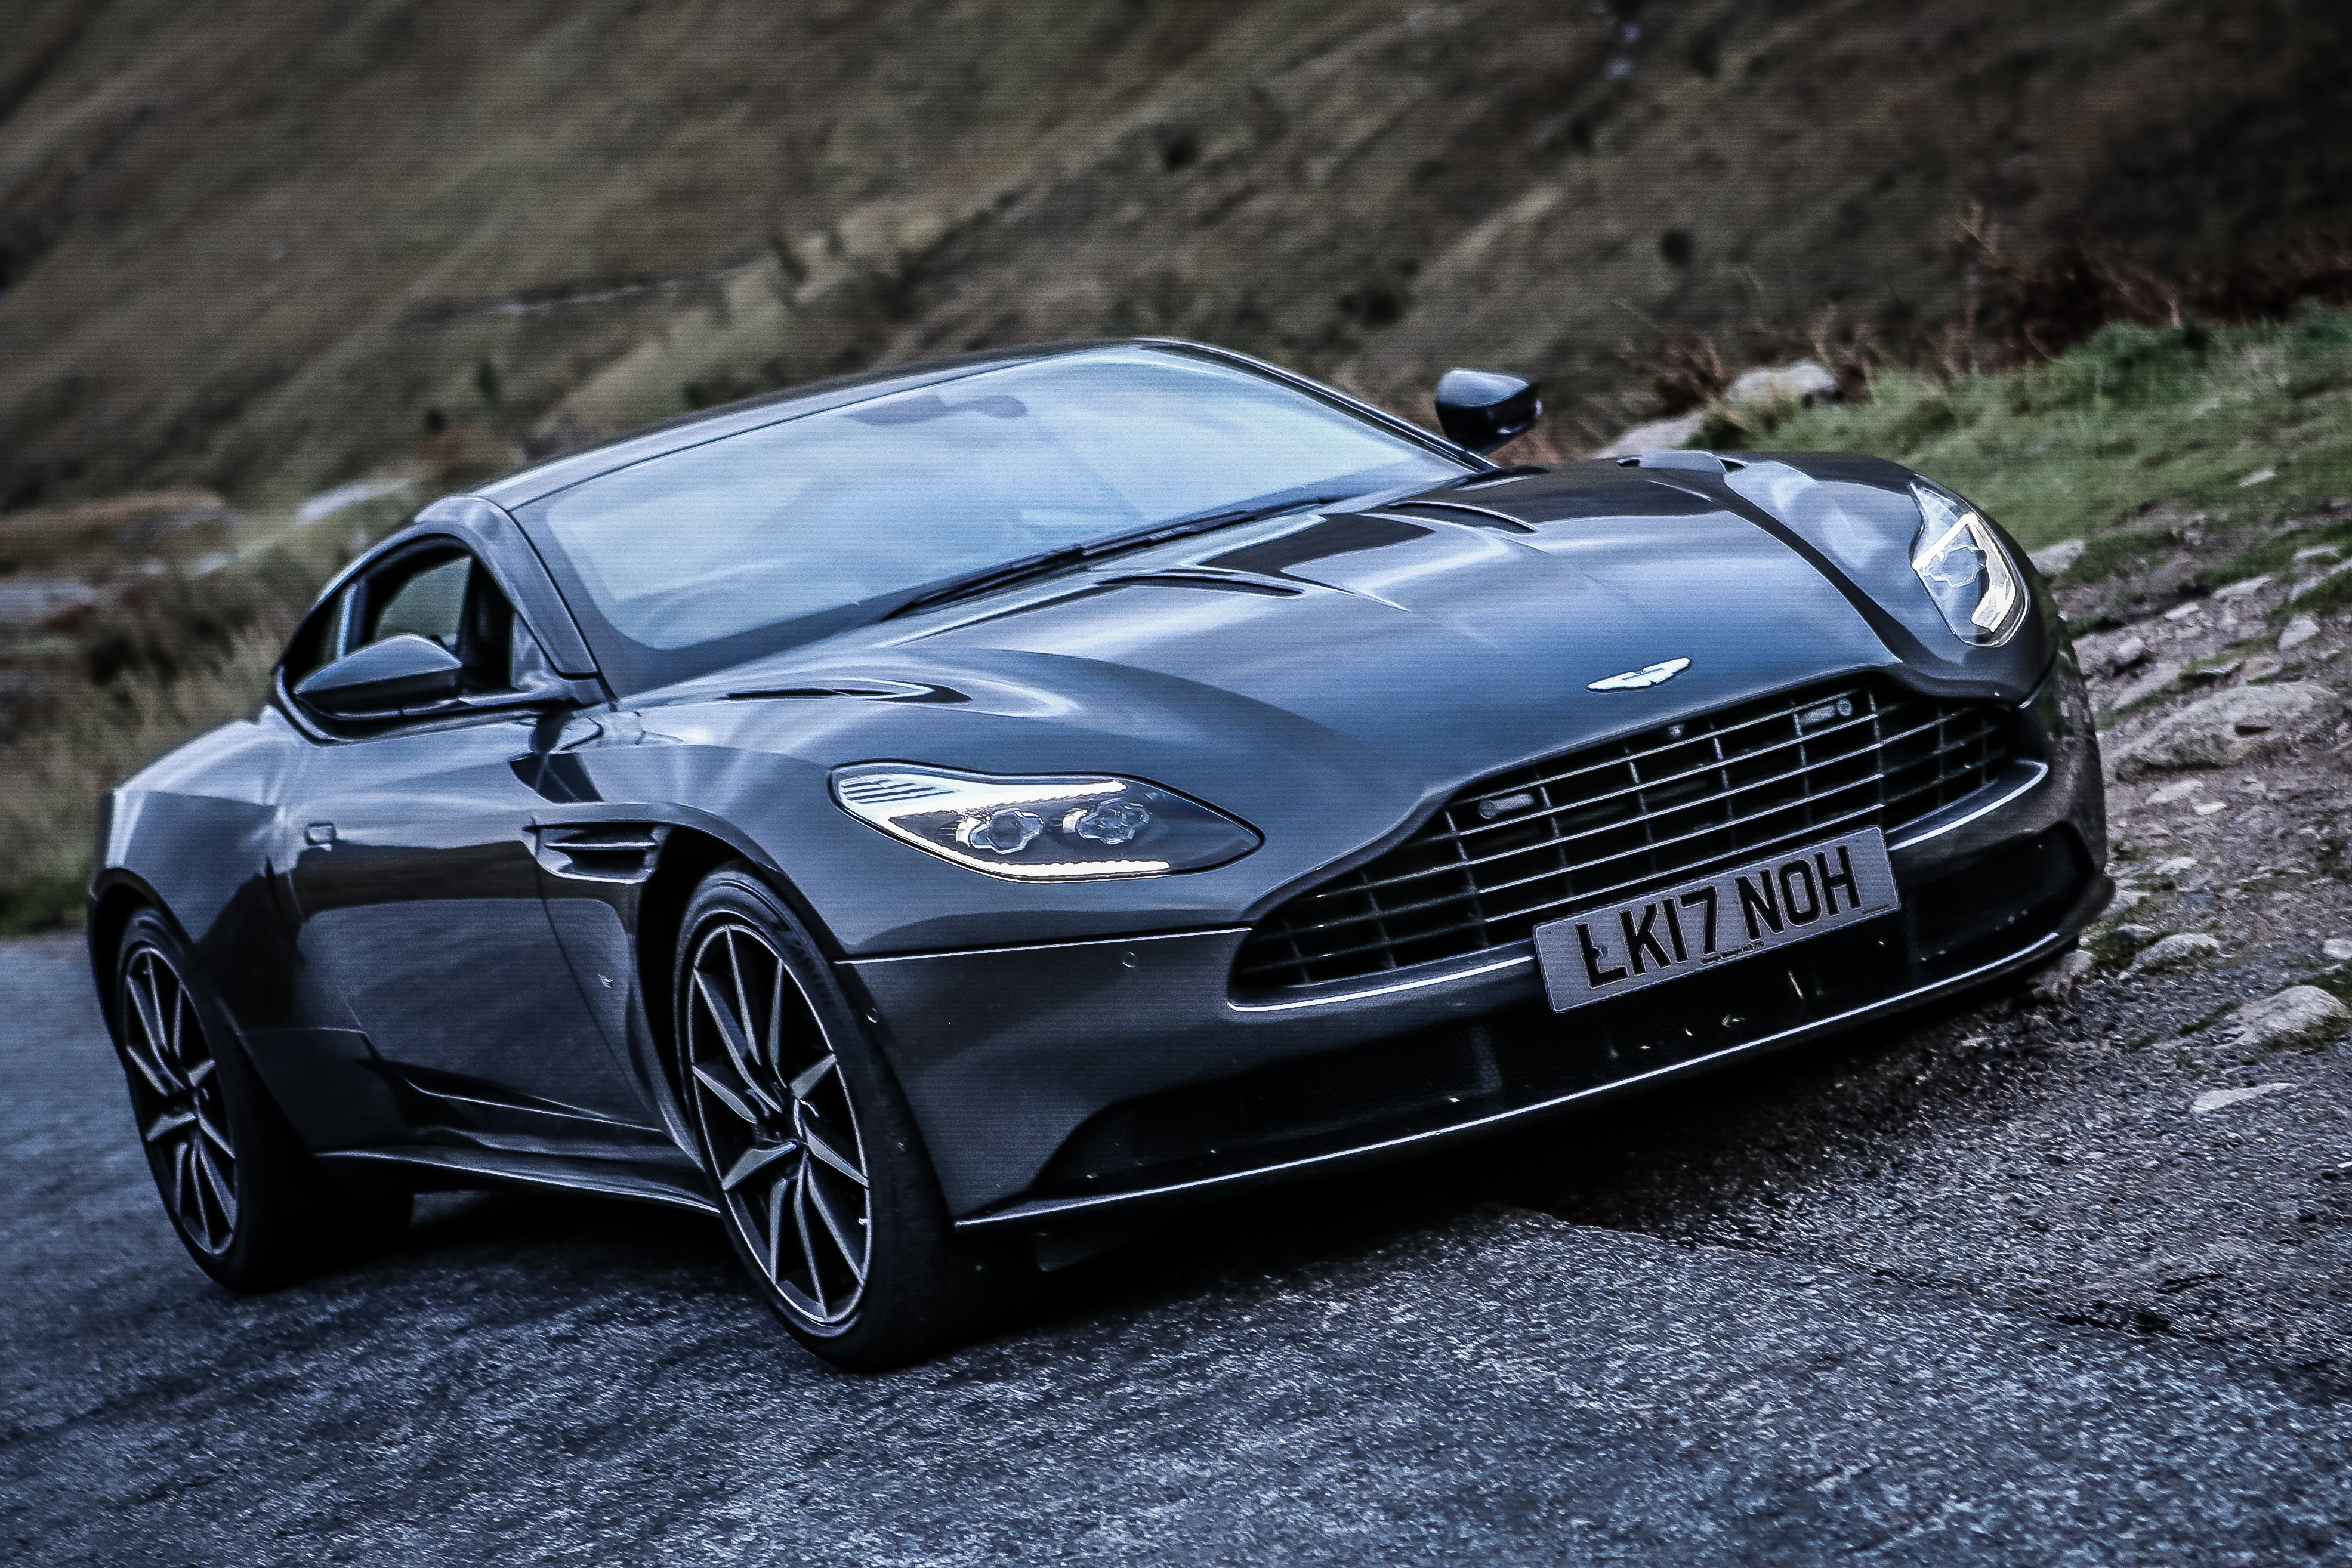 Scotland Road Trip - Aston Martin Style